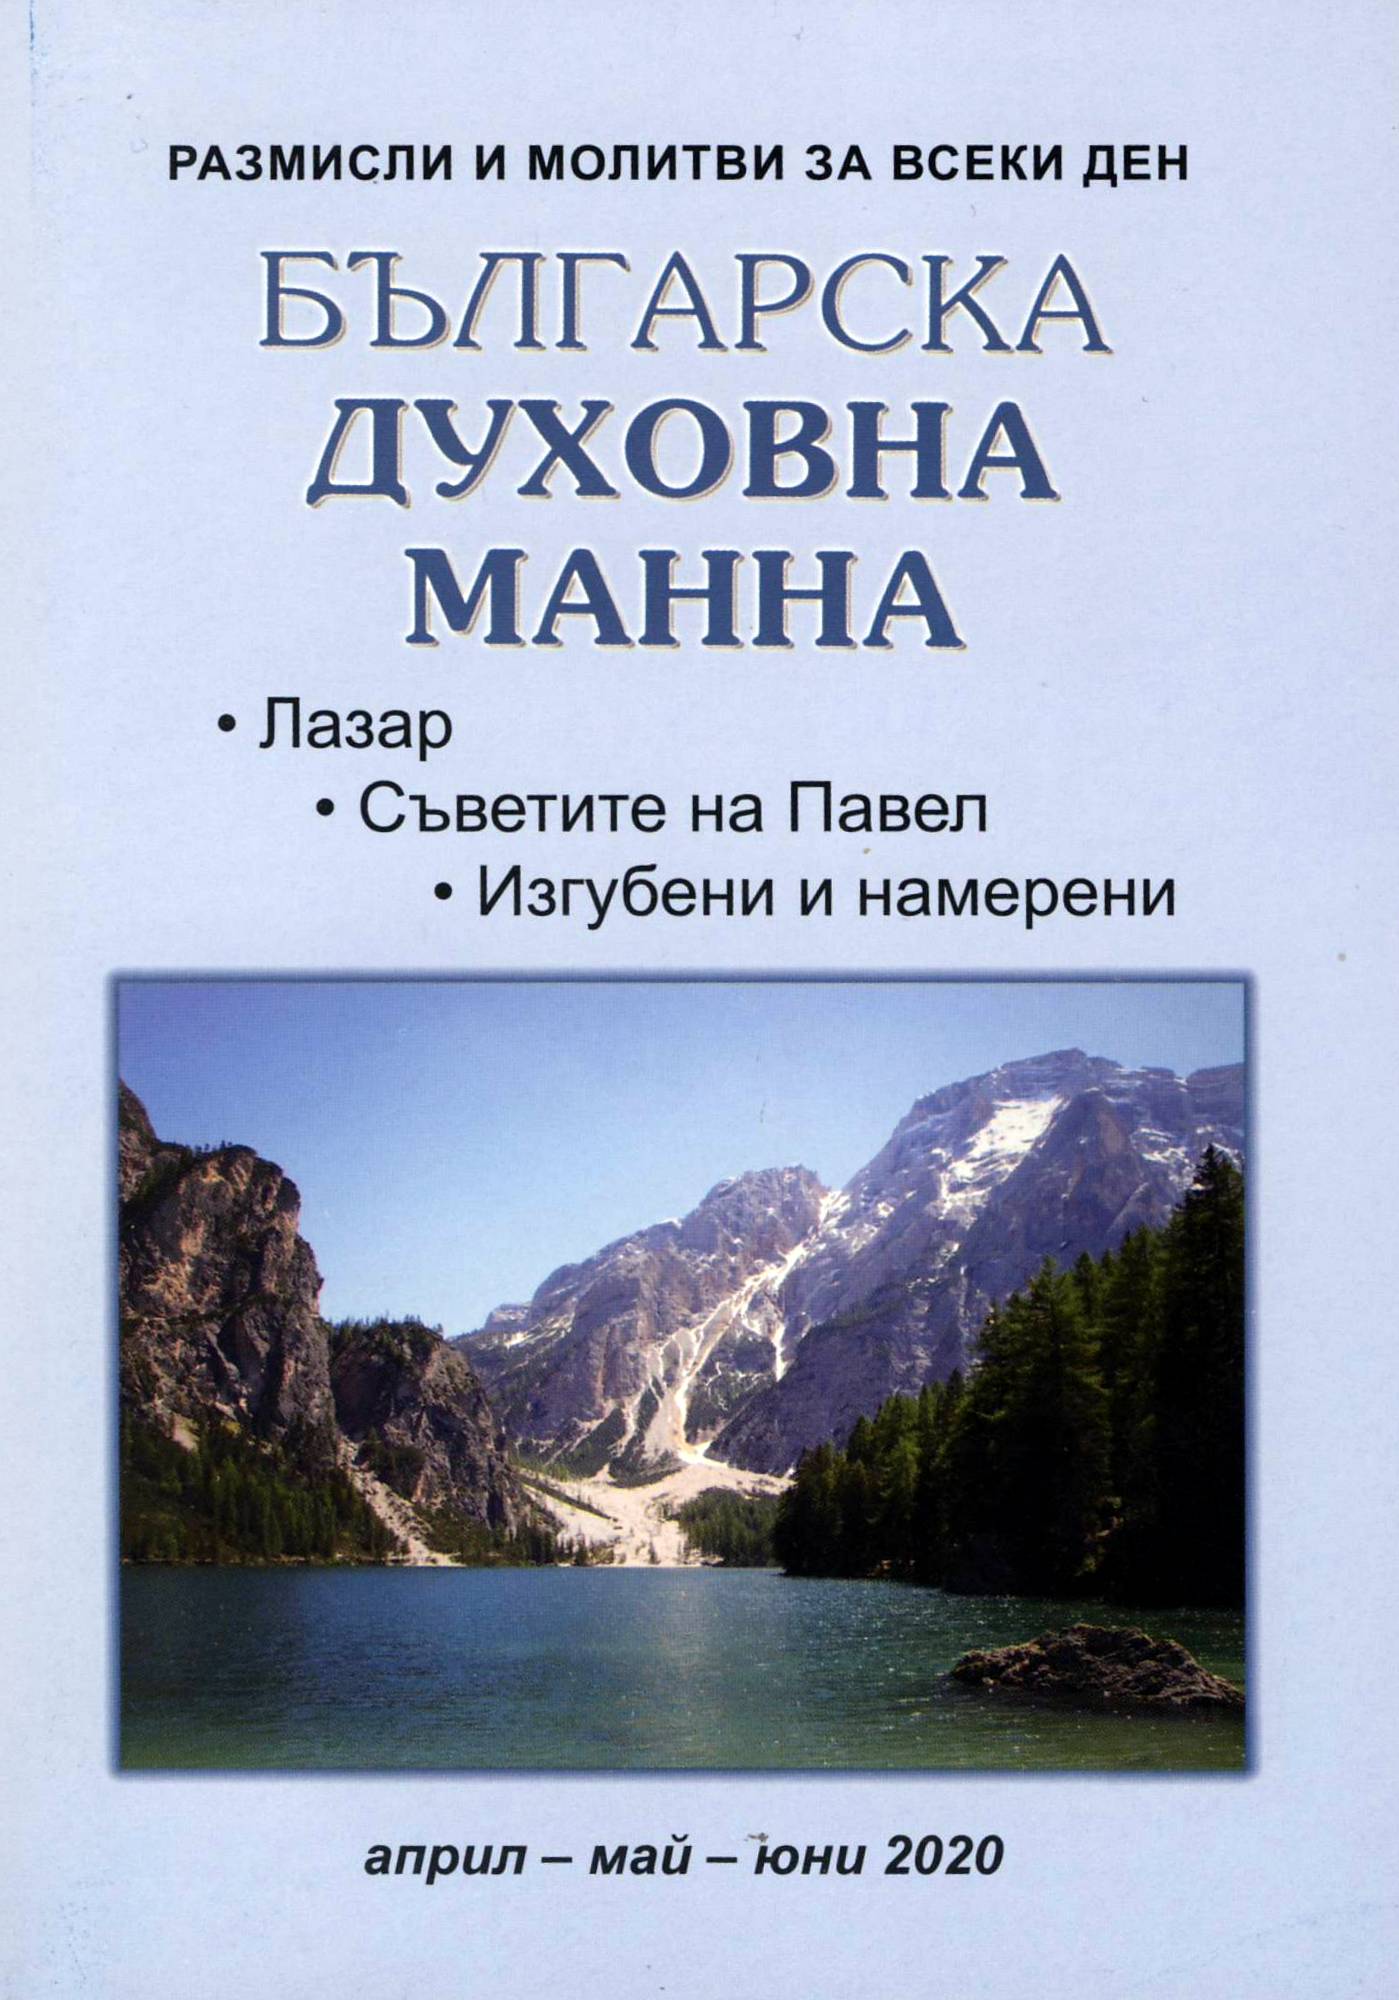 Българска духовна манна - април, май, юни 2020